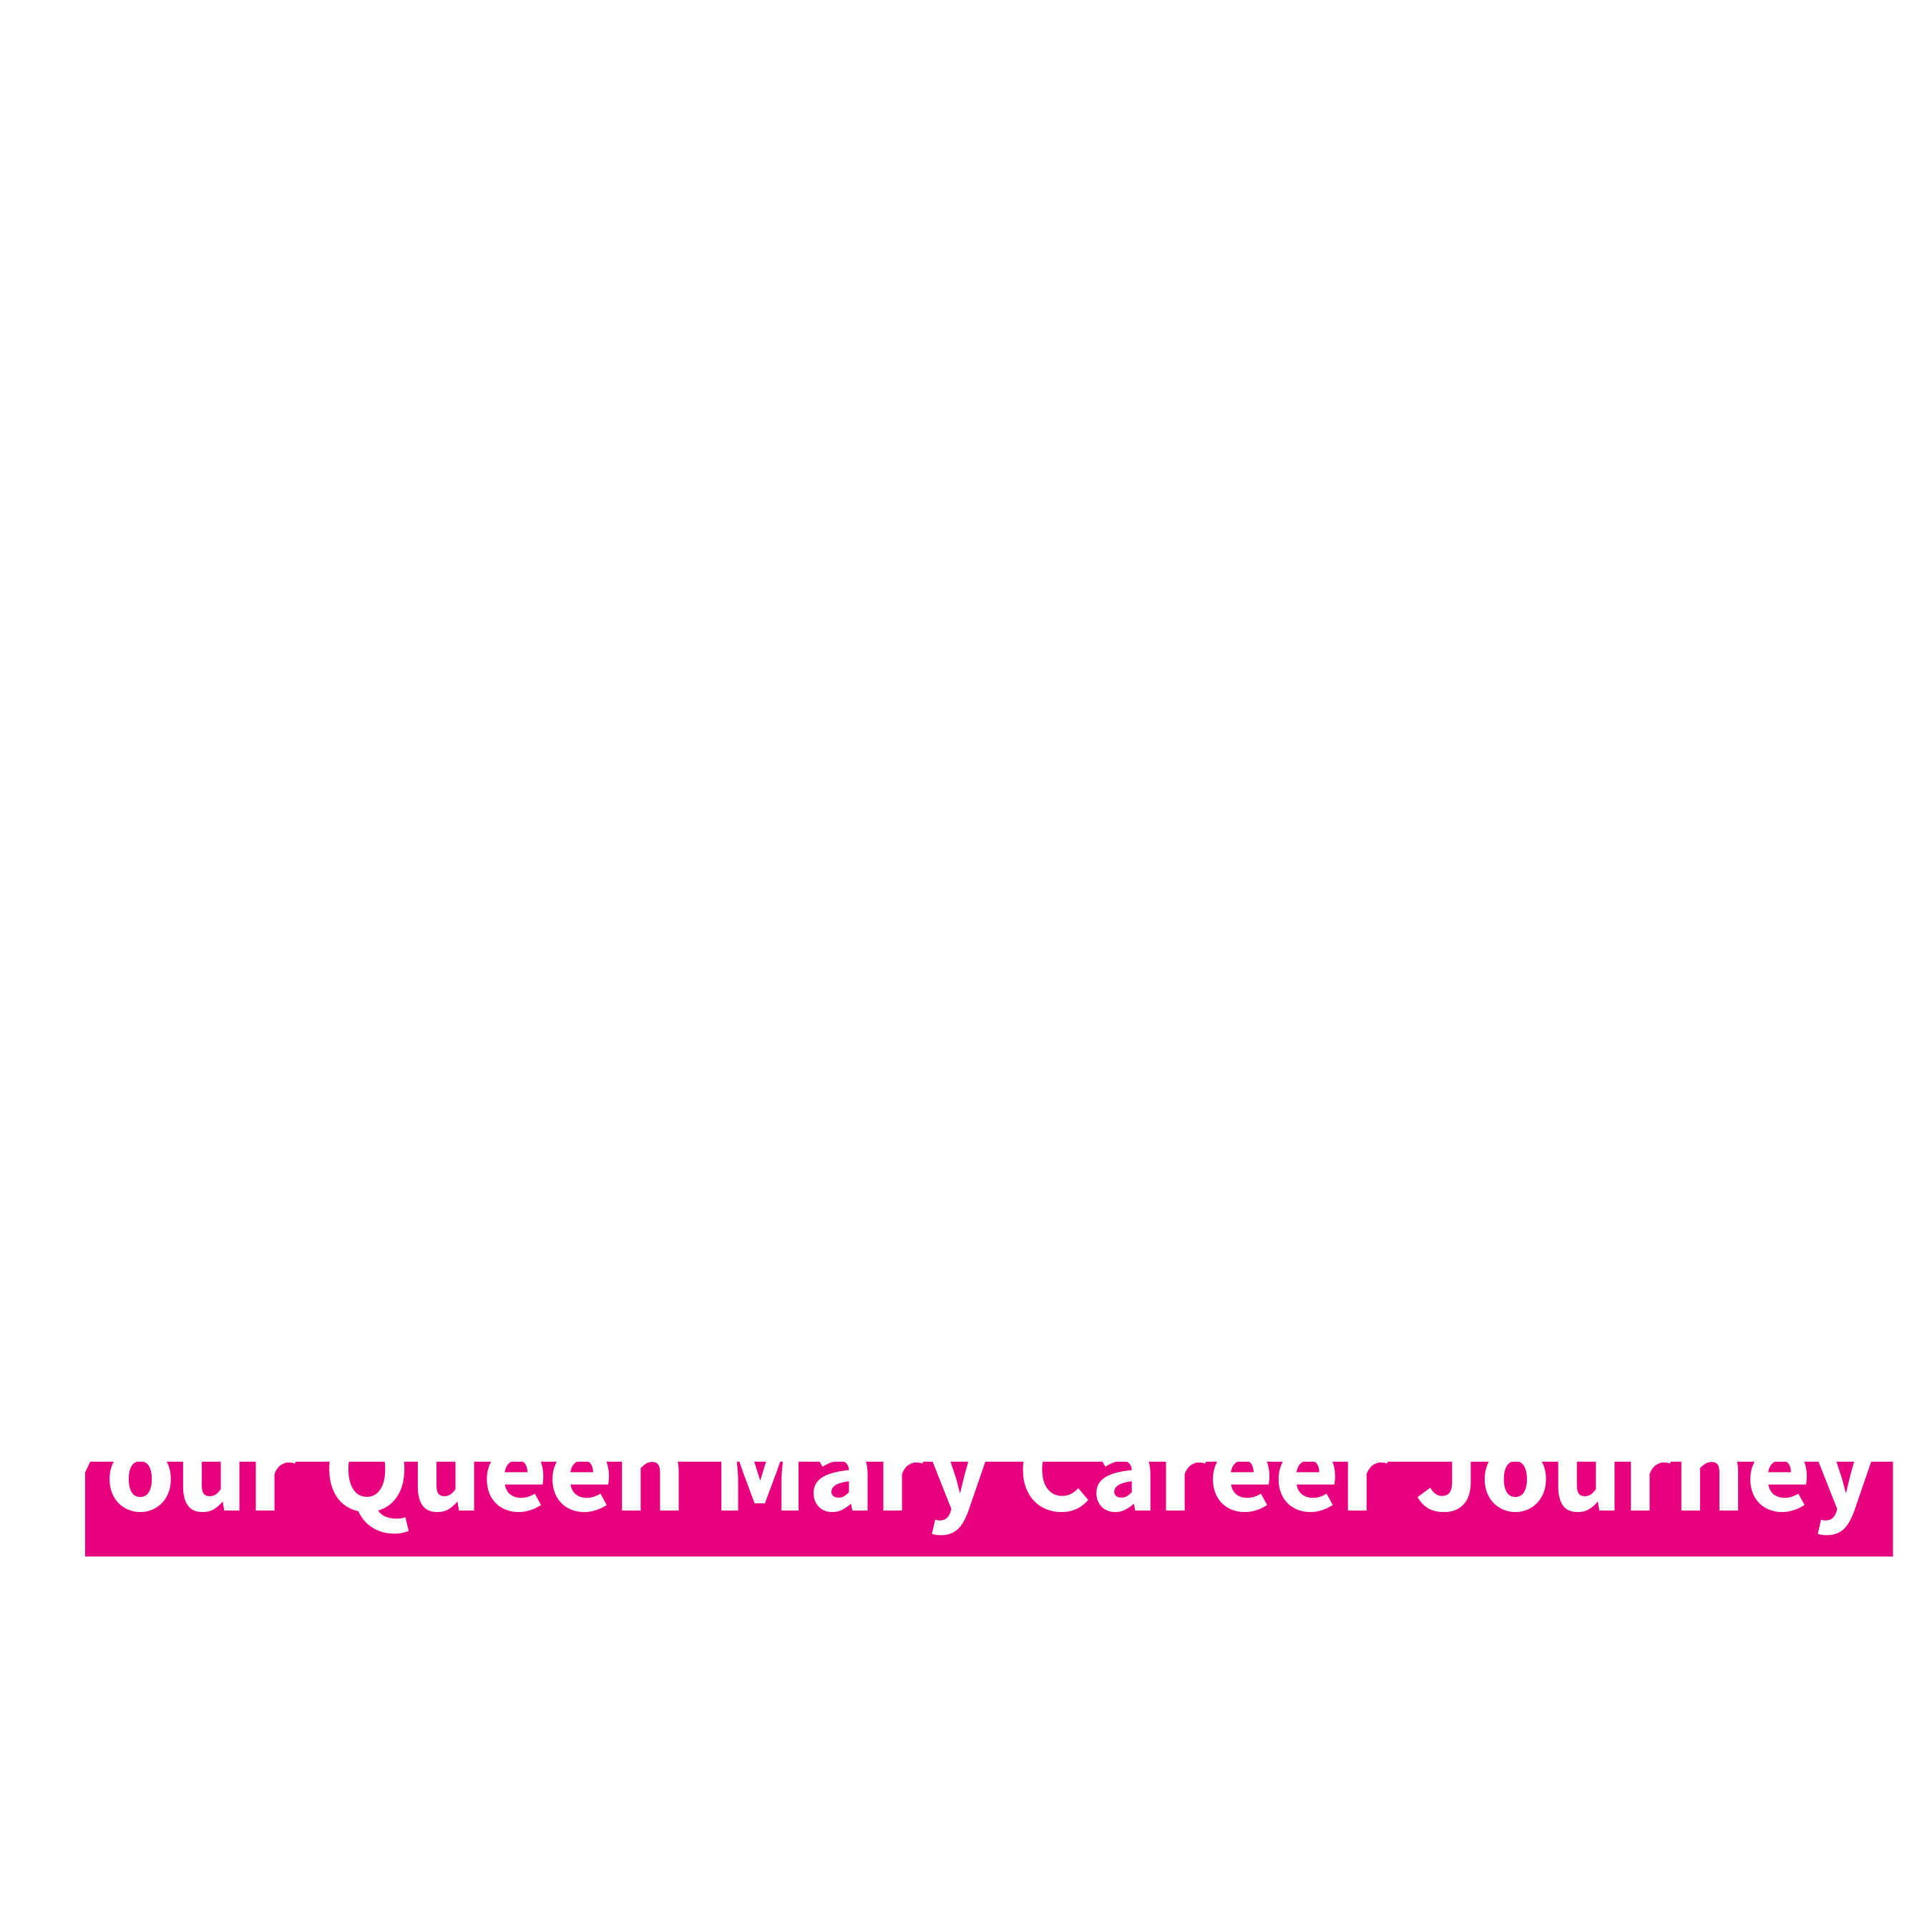 EAST career journey logo